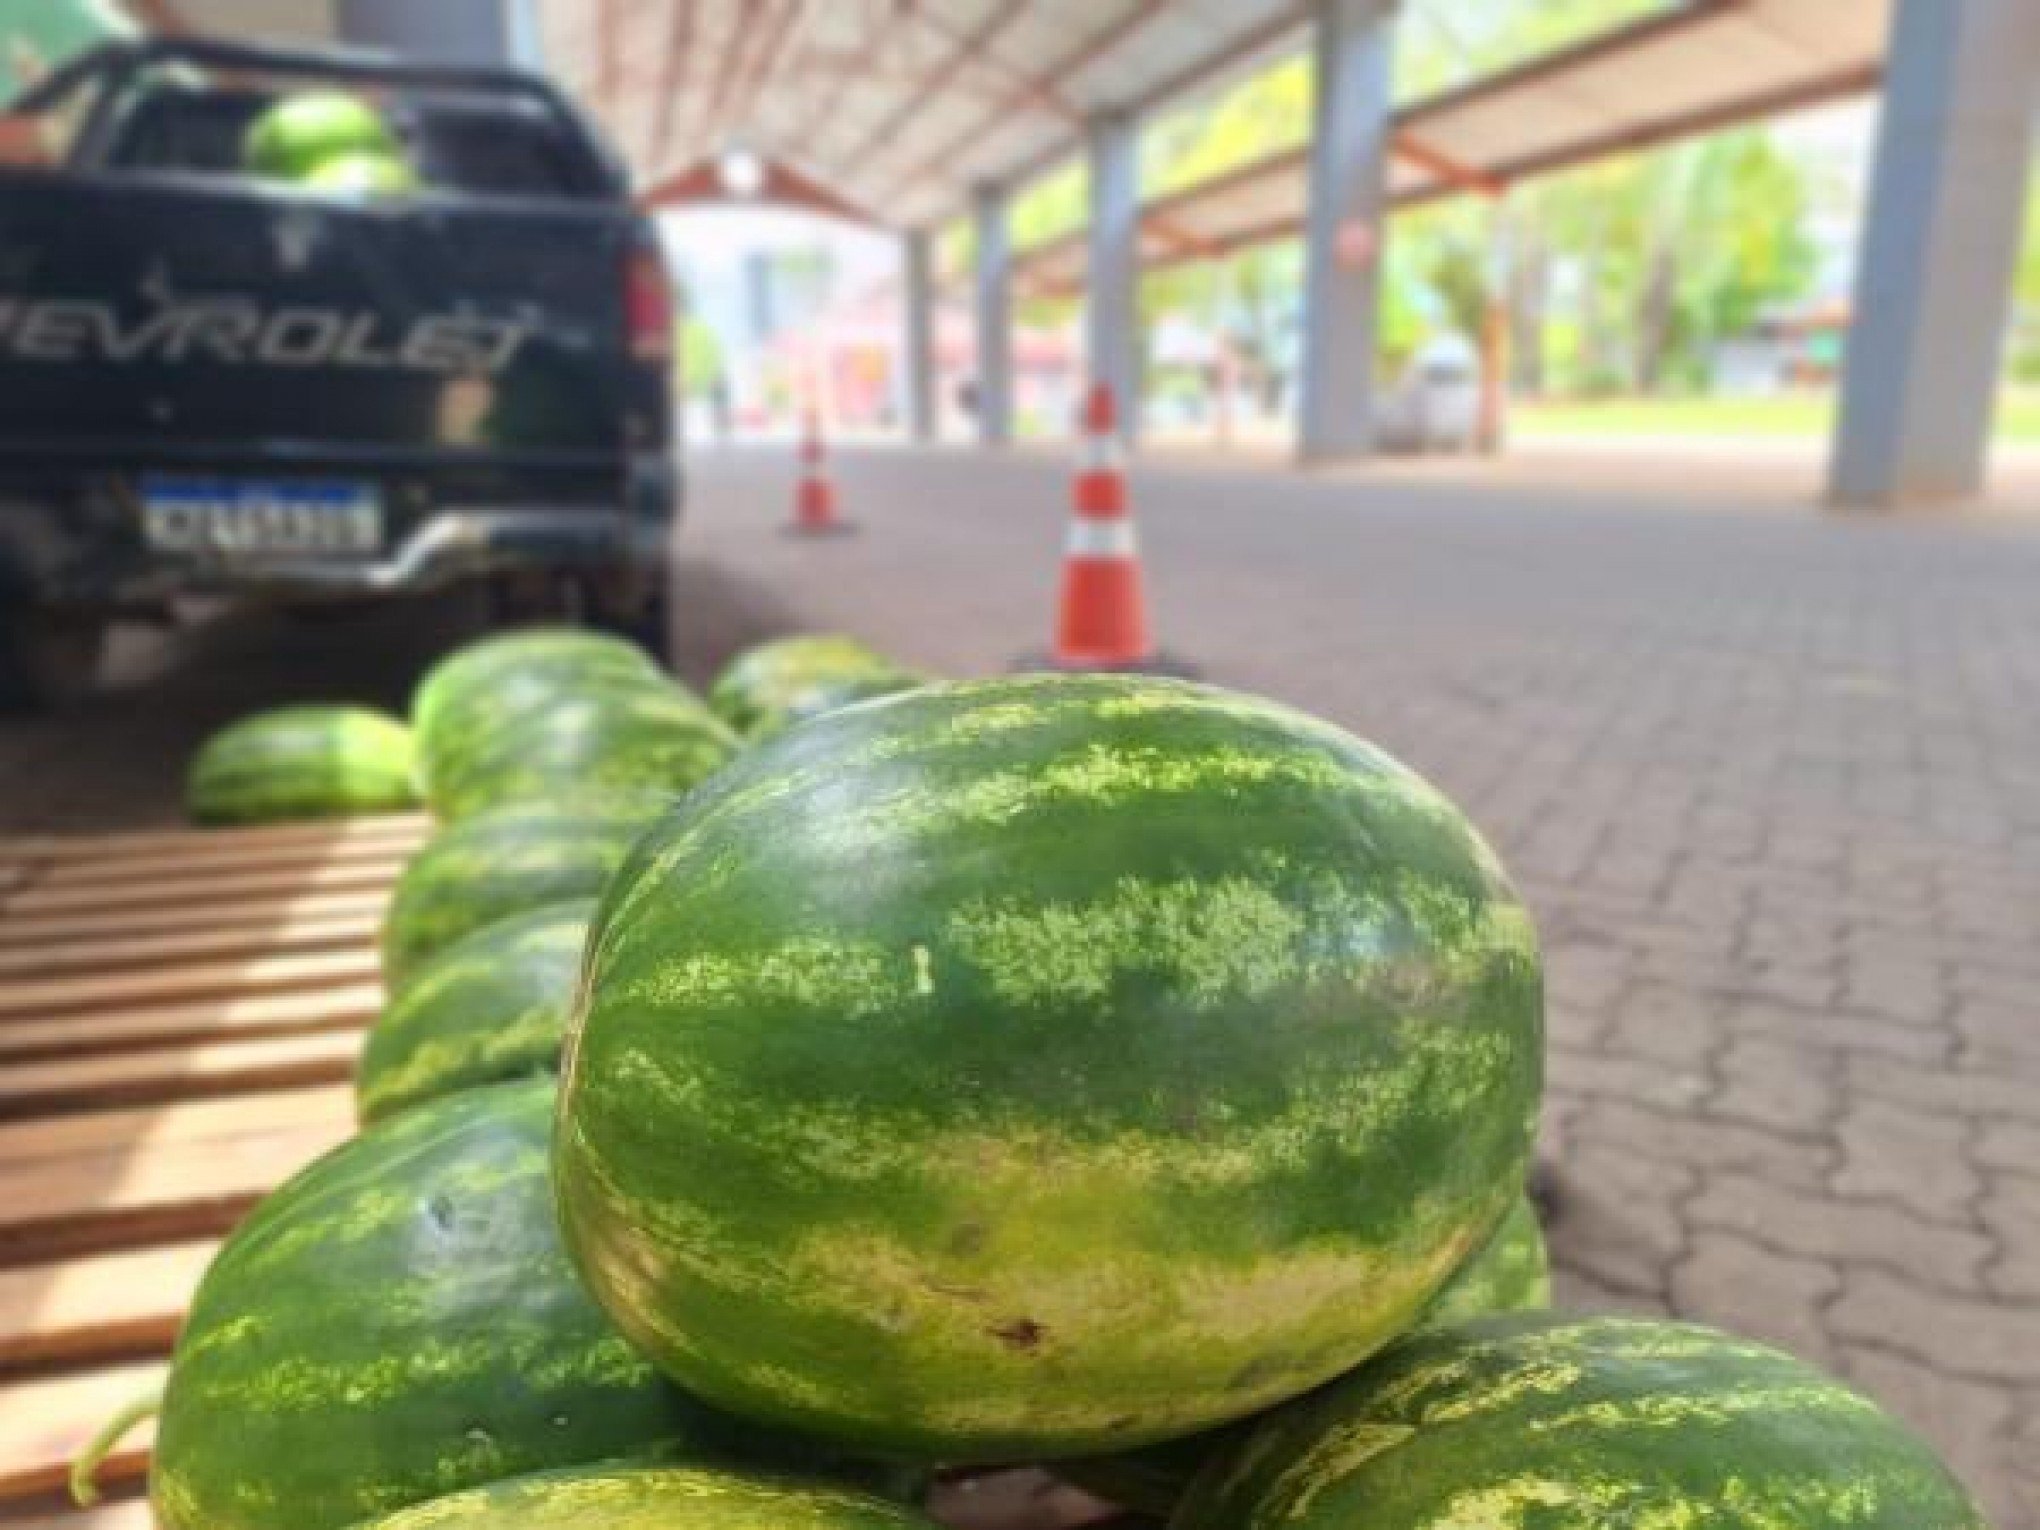 Com a promessa de preços mais atrativos, melancias começam a ser vendidas em Taquara